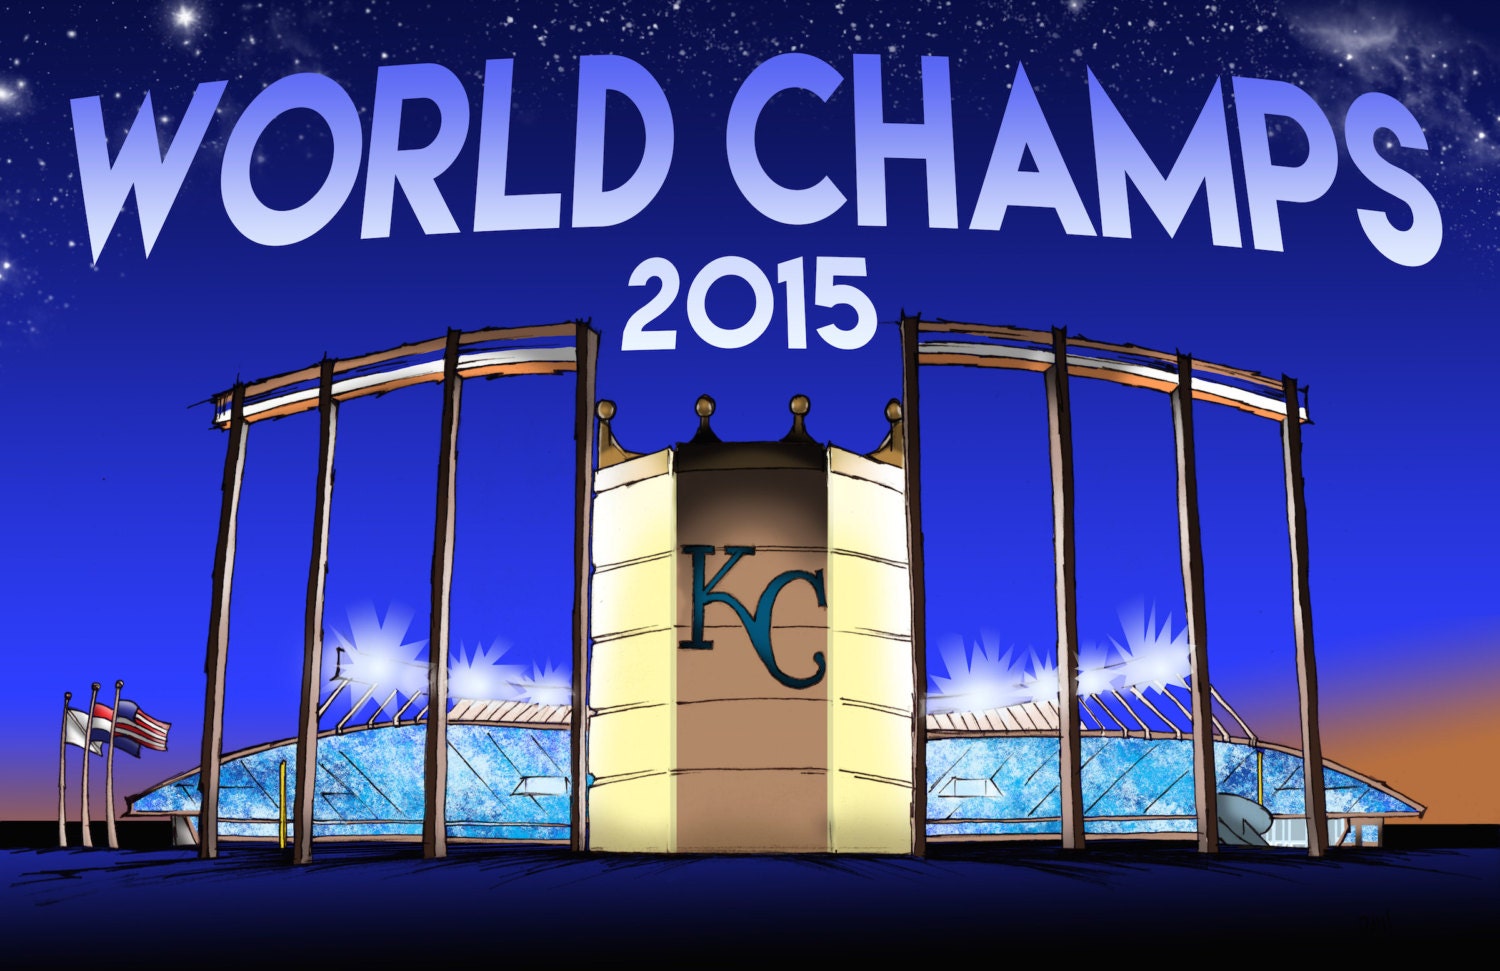 kansas city royals world series championships 2015